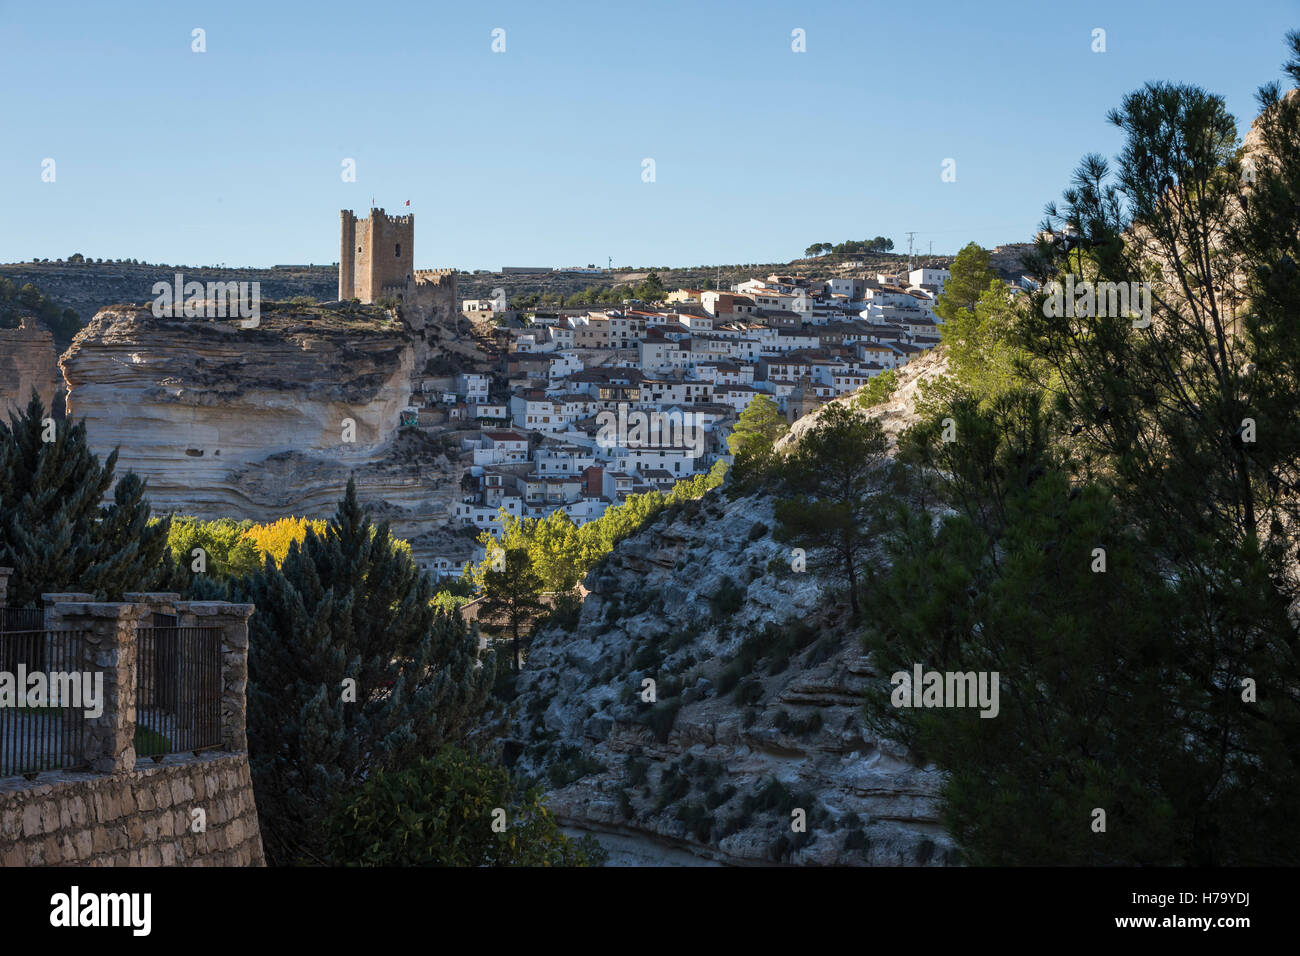 Castle of the 12TH century Almohad origin, take in Alcala del Jucar, Albacete province, Spain Stock Photo